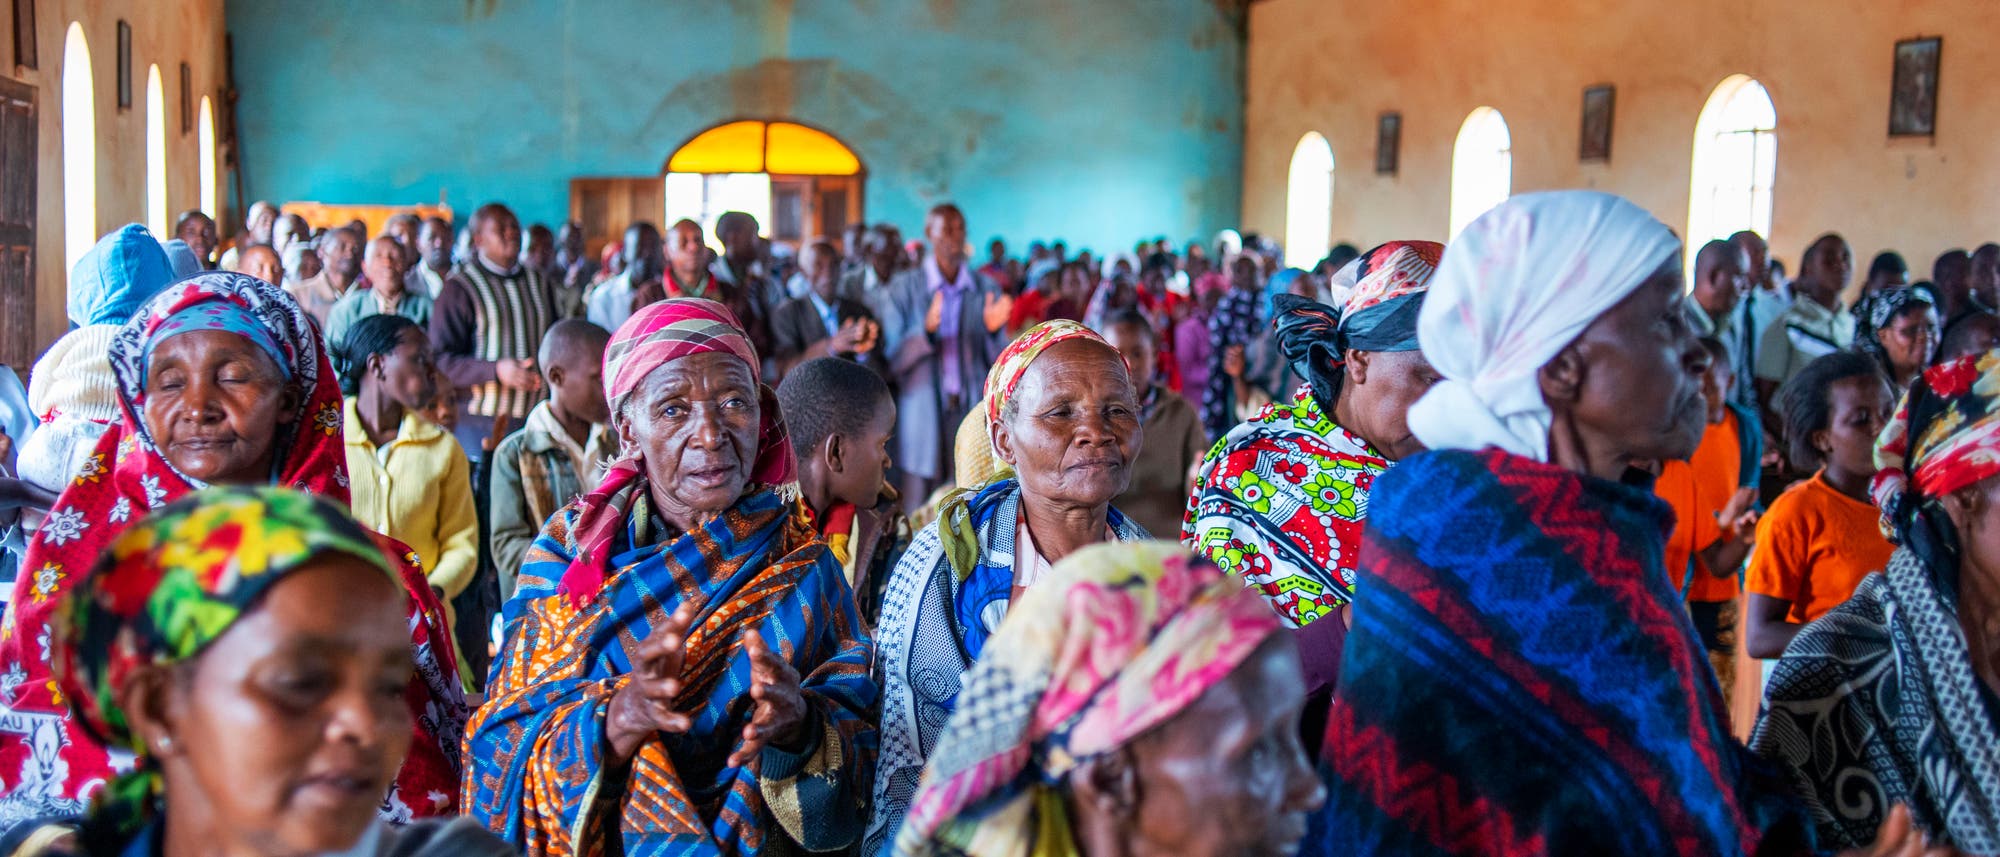 Sonntäglicher Gottesdienst in einem Dorf in Kenia